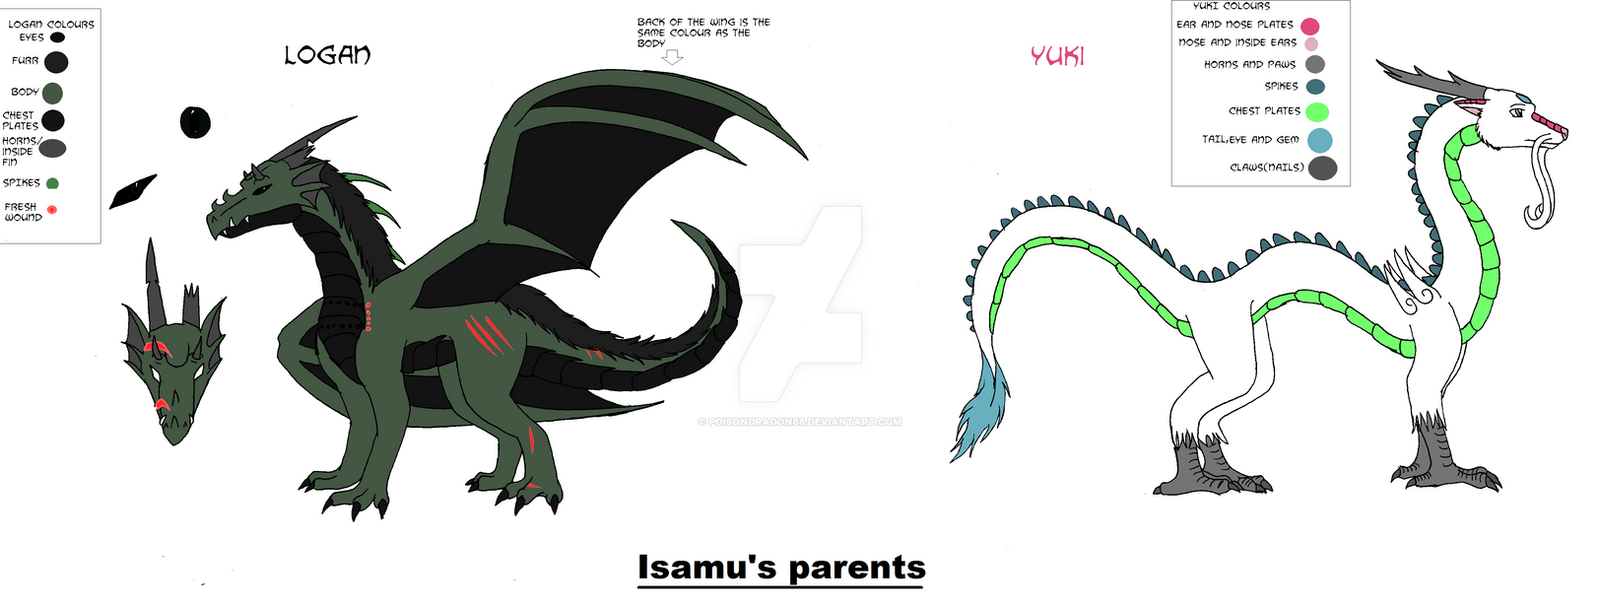 ref - Isamu's parents